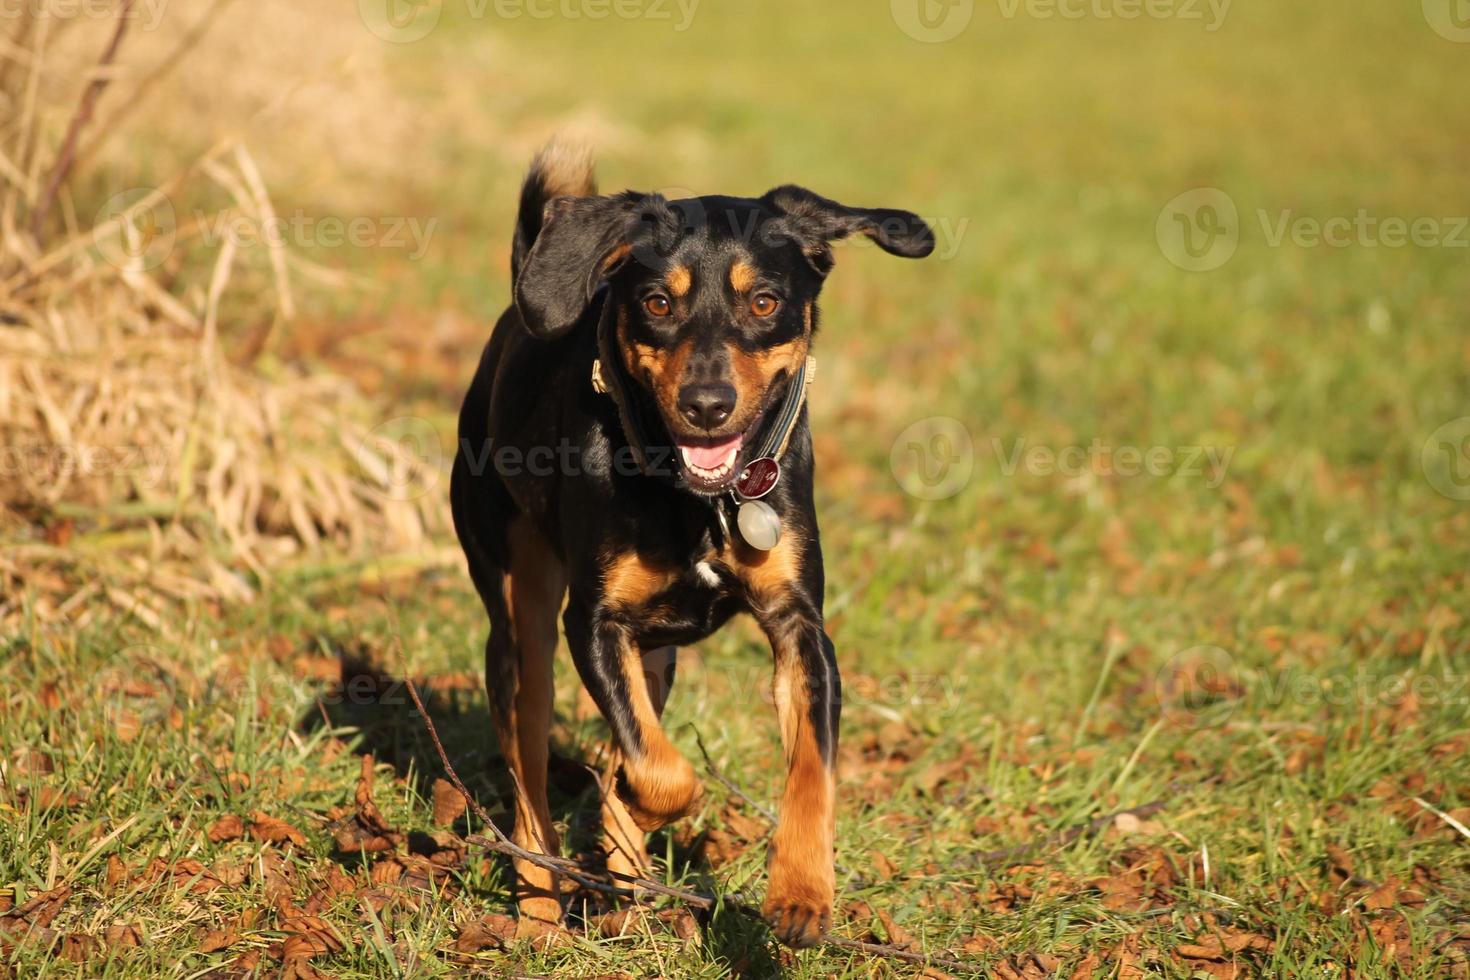 hund rennt auf traidor zu. cachorro correndo - vista frontal foto